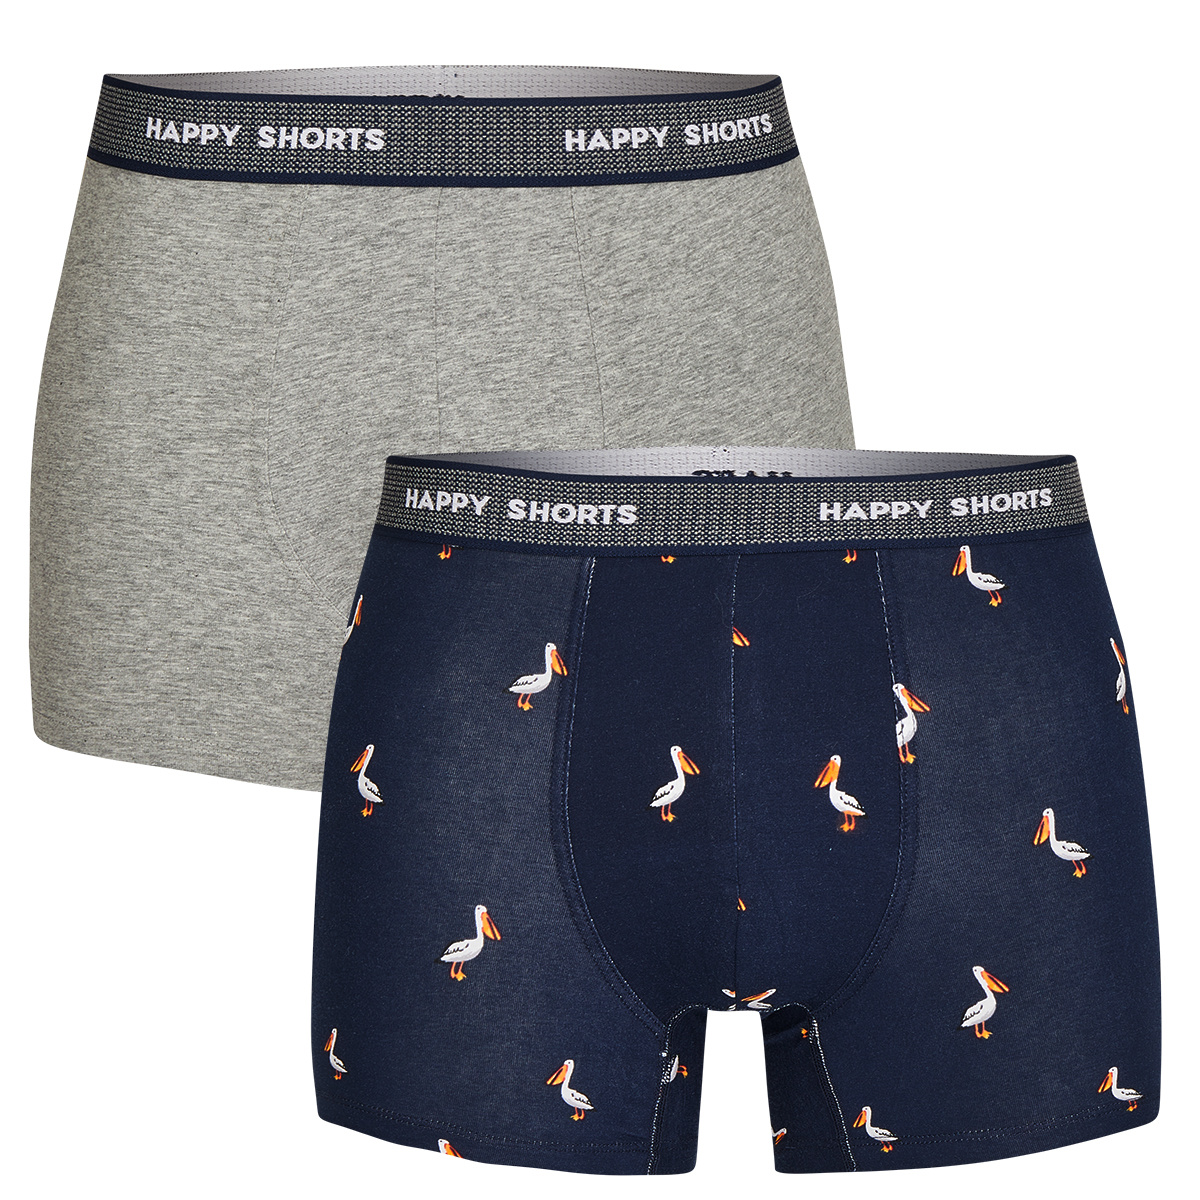 Afbeelding van Happy Shorts 2-pack boxershorts heren ooievaar print